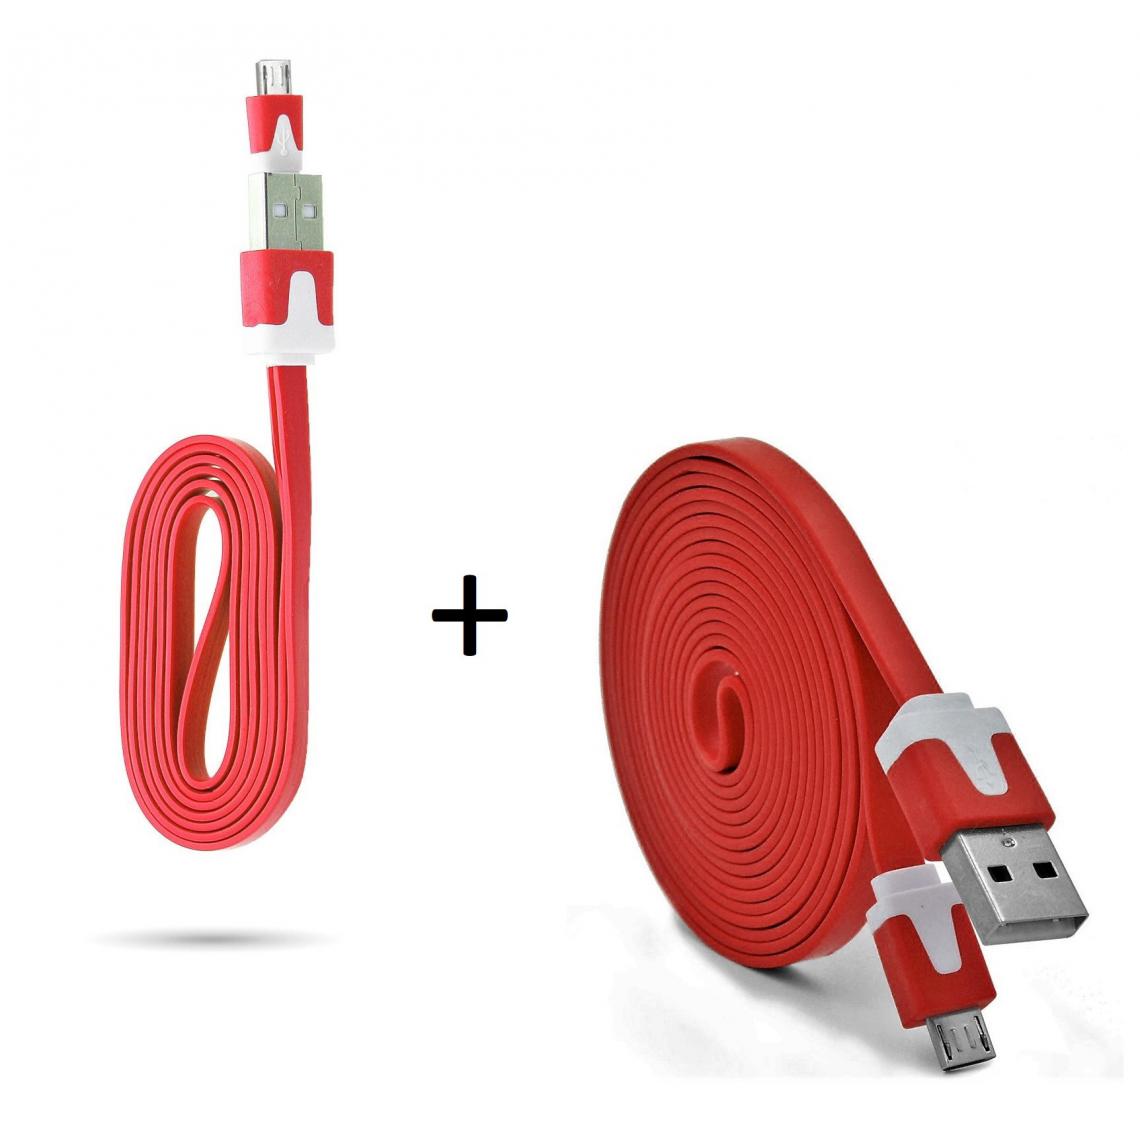 Shot - Pack Chargeur pour WIKO View 2 Plus Smartphone Micro USB (Cable Noodle 3m + Cable Noodle 1m) Android (ROUGE) - Chargeur secteur téléphone